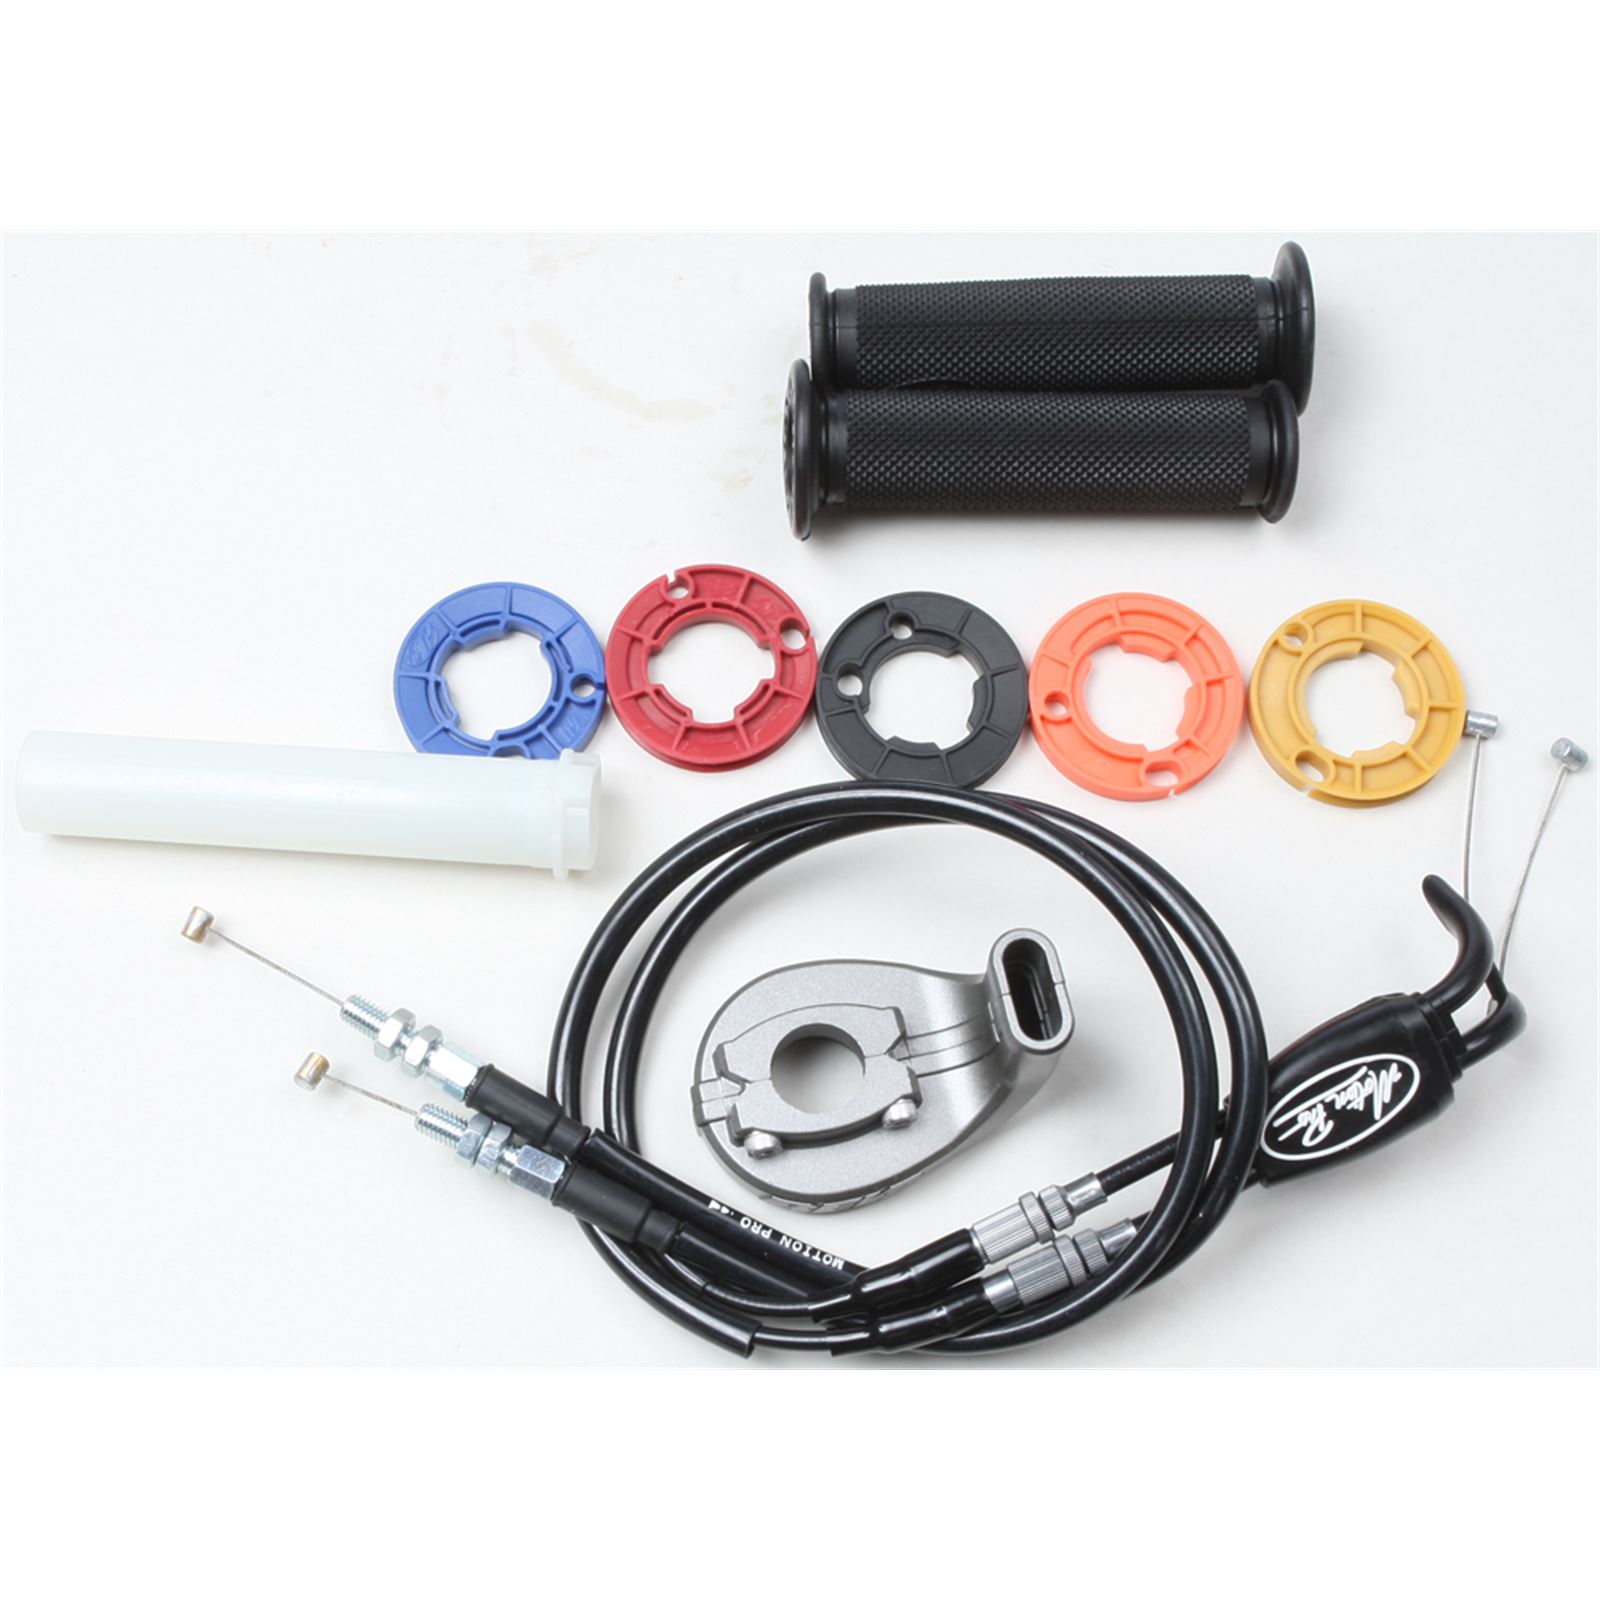 Motion Pro Rev2 Throttle Kit for sale online 01-2720 